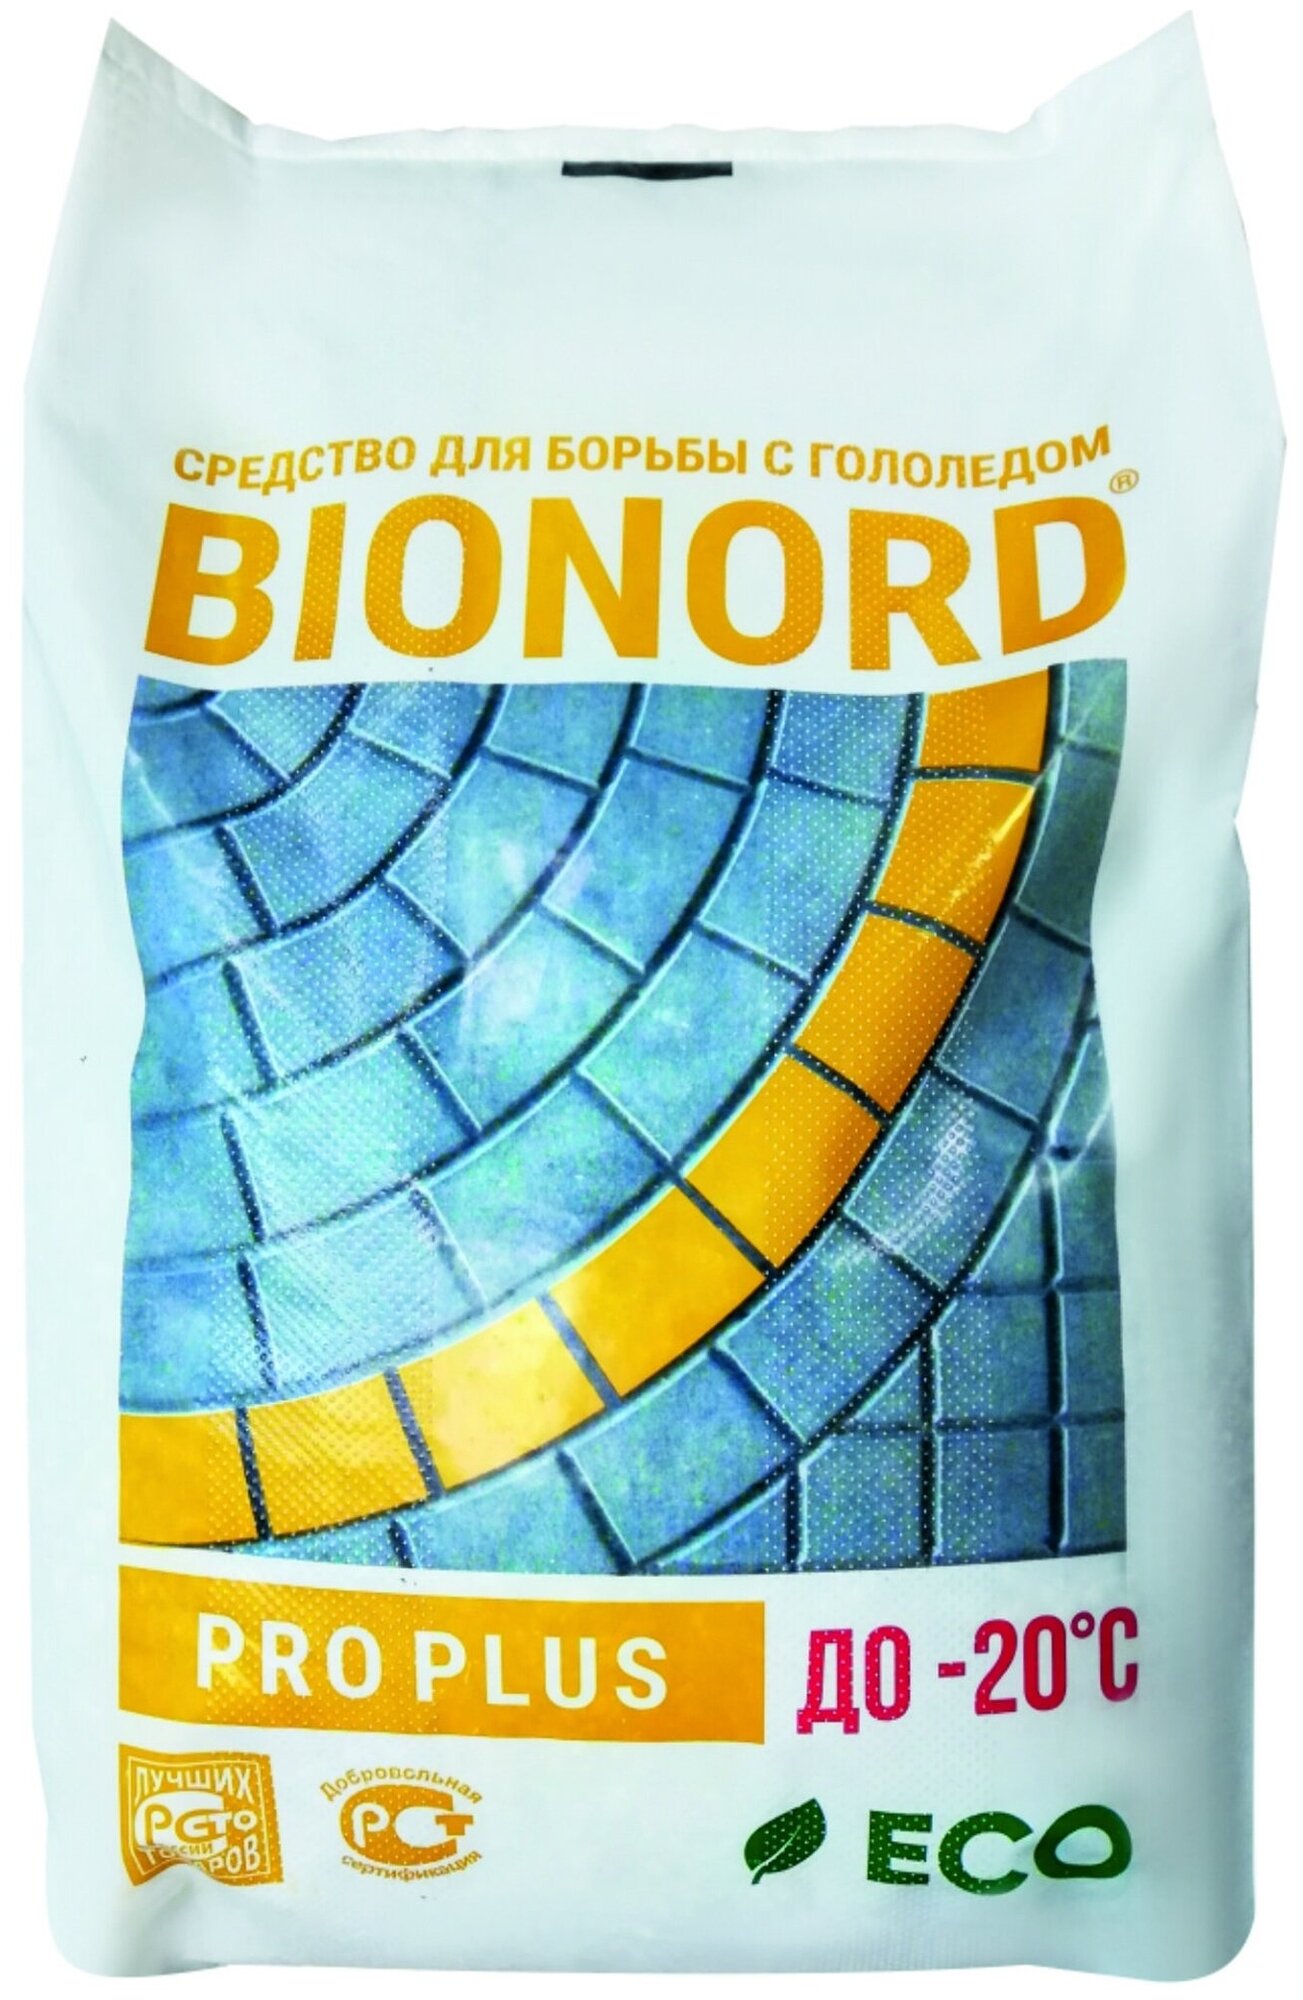 Антигололедный реагент Бионорд Pro Plus 23 кг